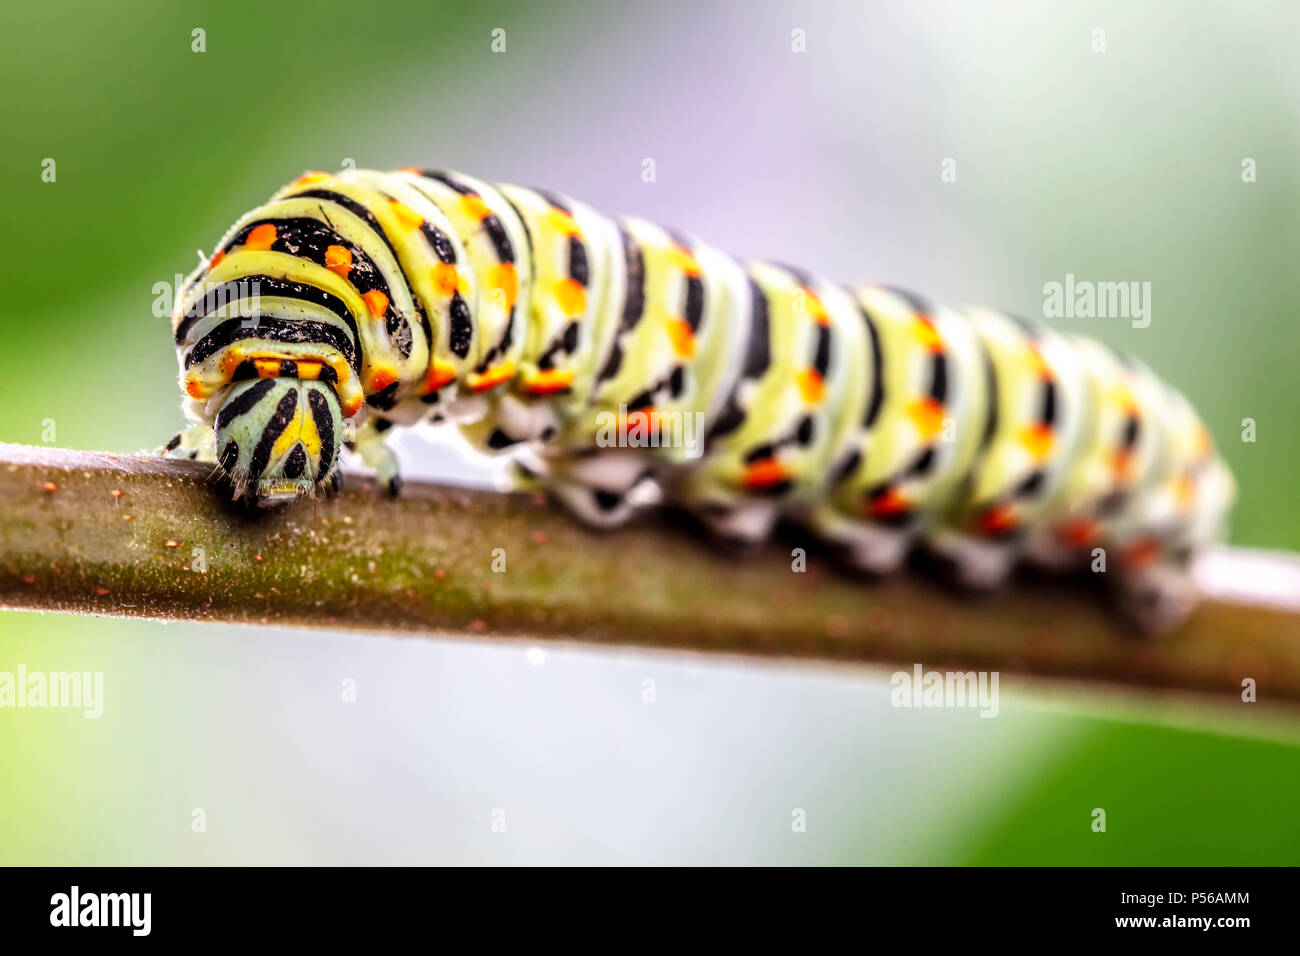 Papilio machaon Caterpillar in atteggiamento minaccioso Foto Stock